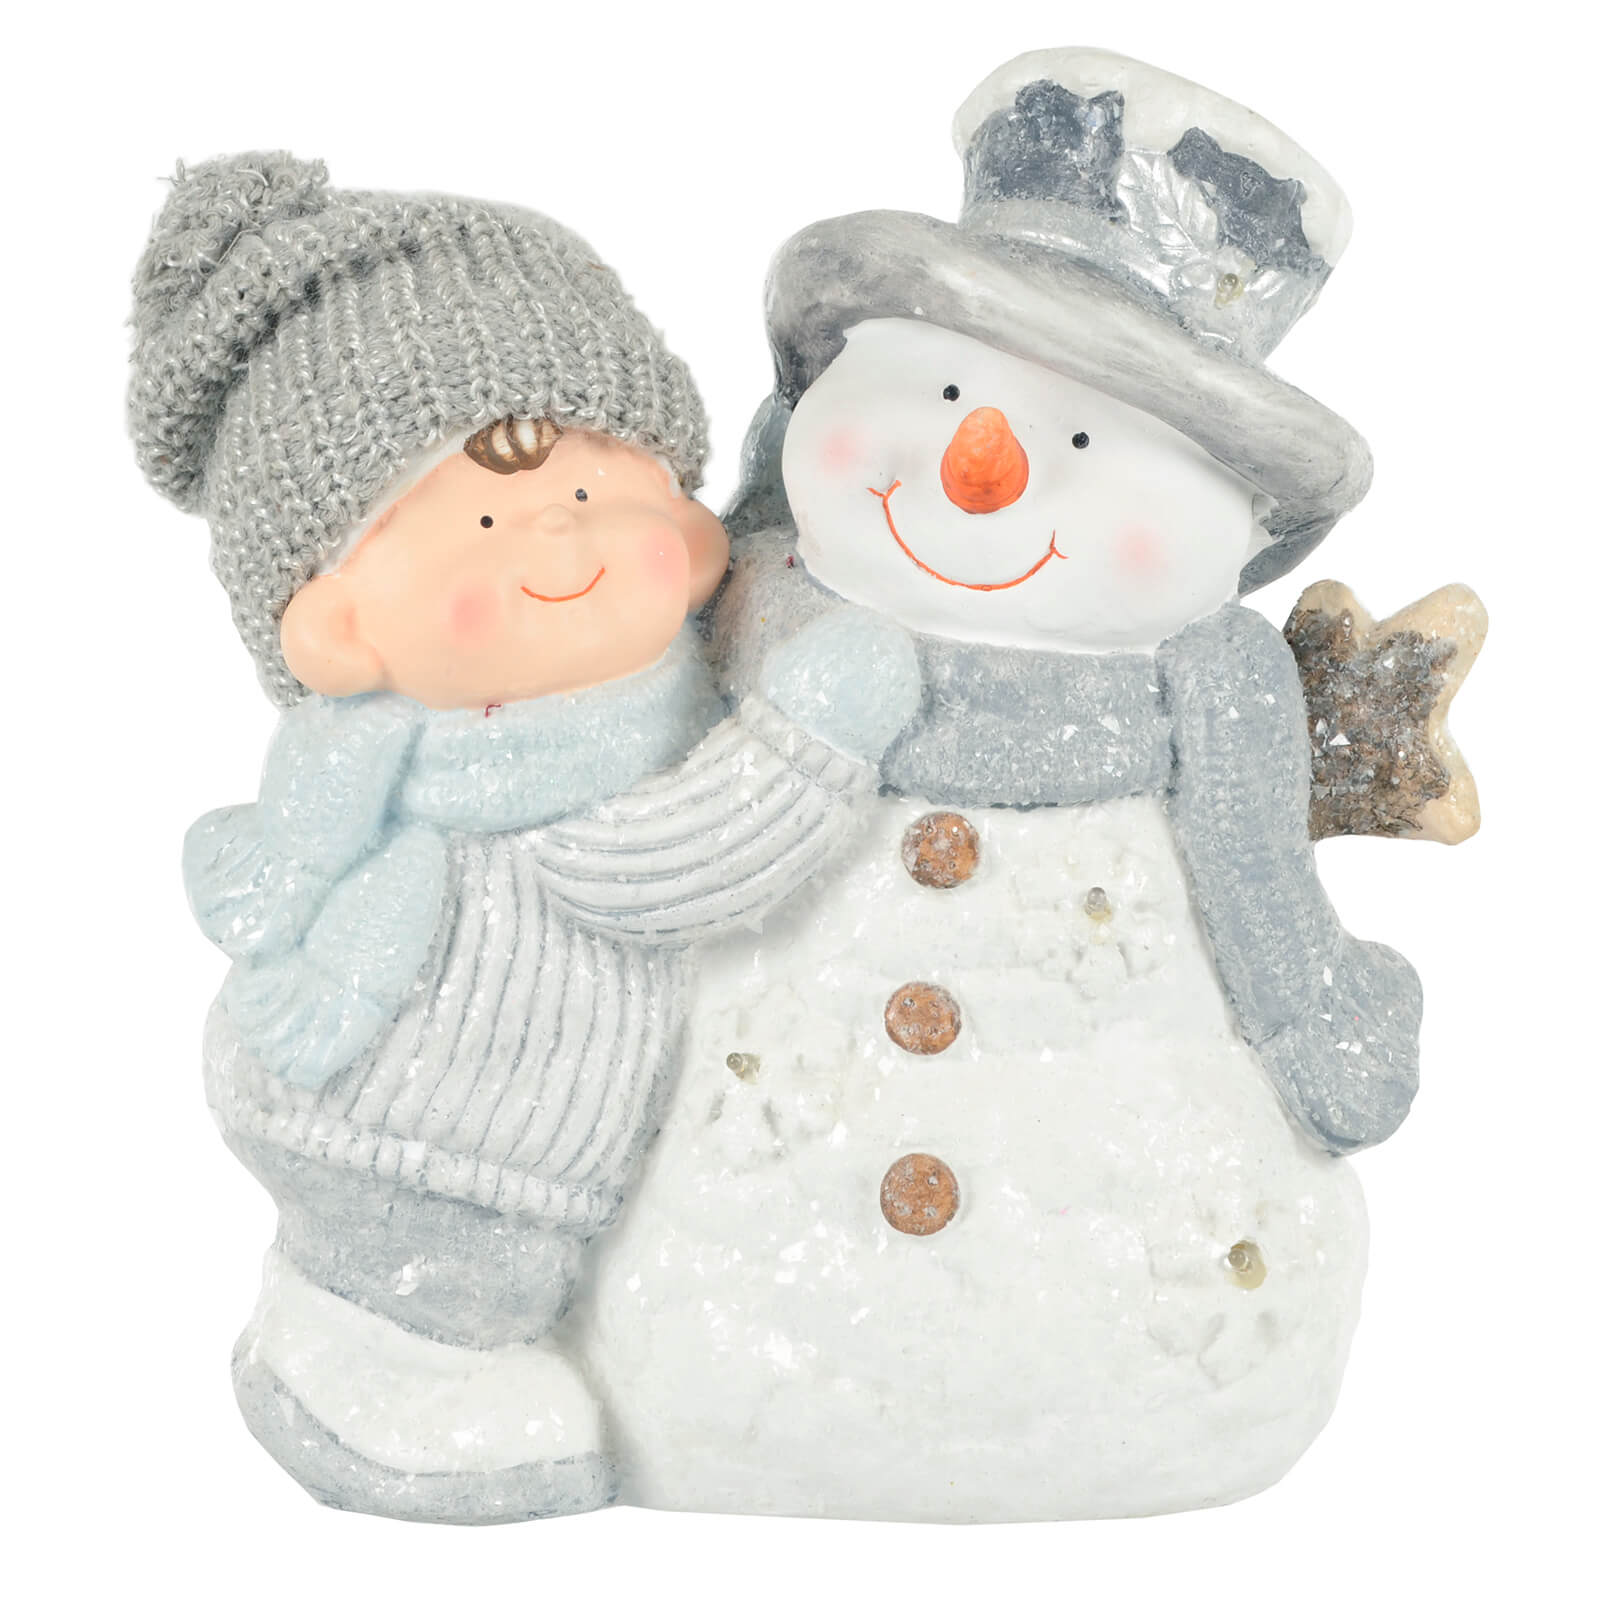 Mr Crimbo Light Up Christmas Decoration Snowman Ceramic 37cm - MrCrimbo.co.uk -XS7150 - Boy -